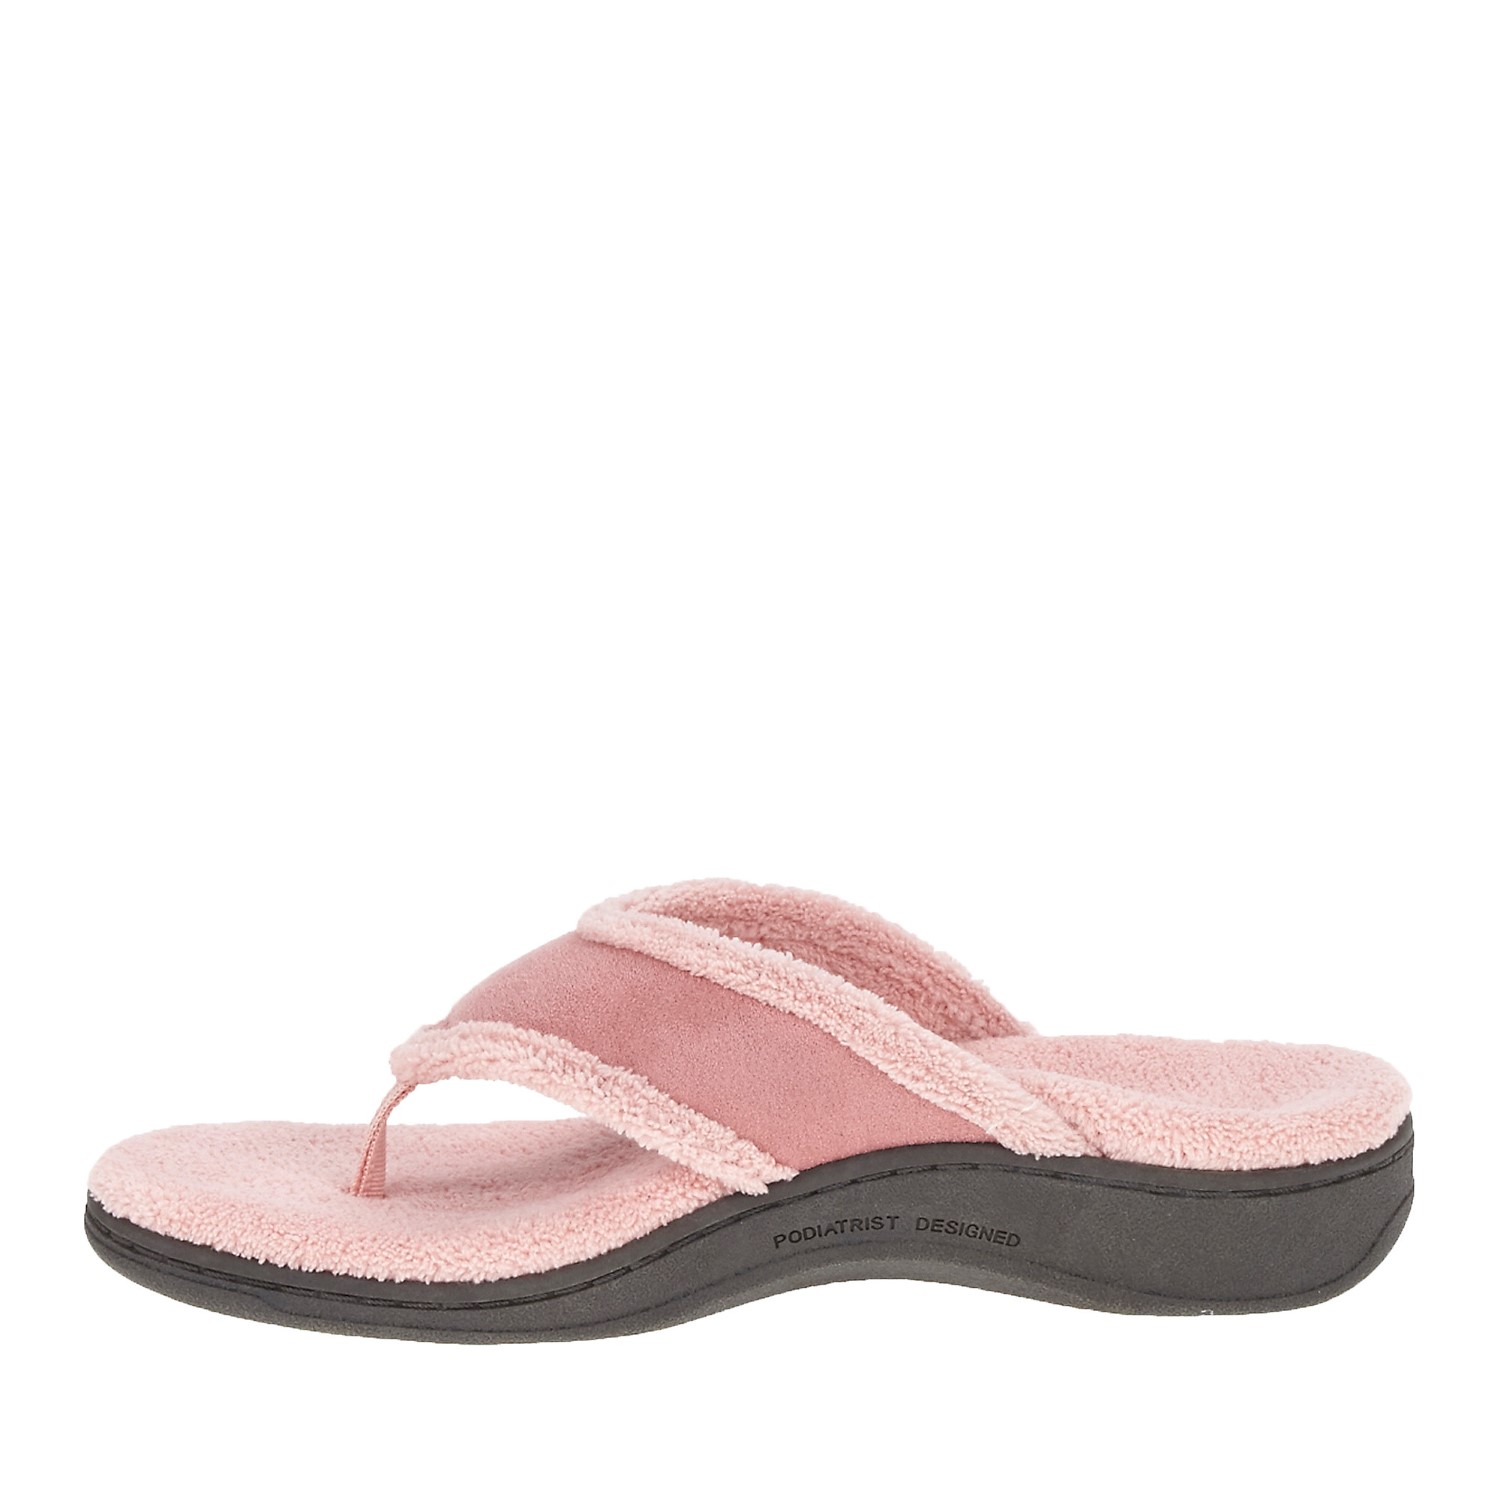 Vionic Bliss Women s Soft Slipper  Sandal  w Orthaheel 